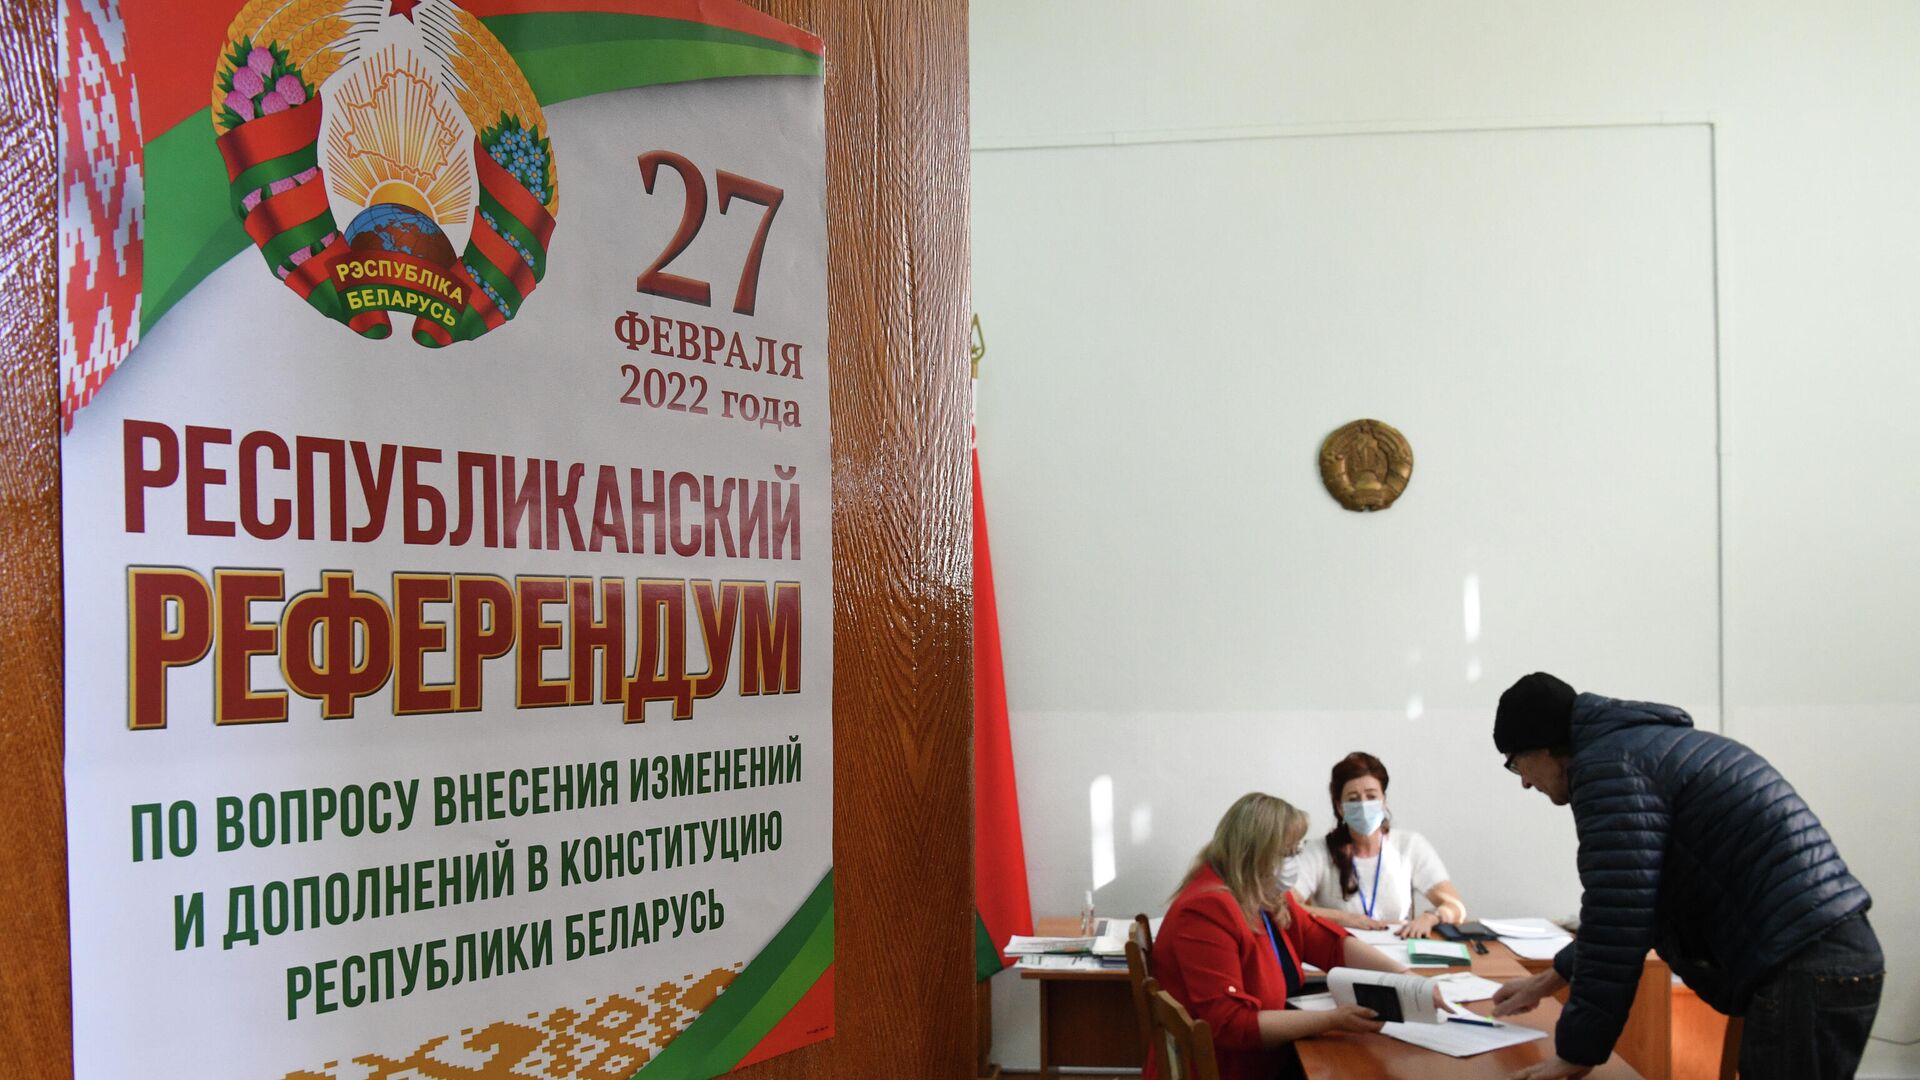 Конституционный референдум в Беларуси - Sputnik Грузия, 1920, 27.02.2022